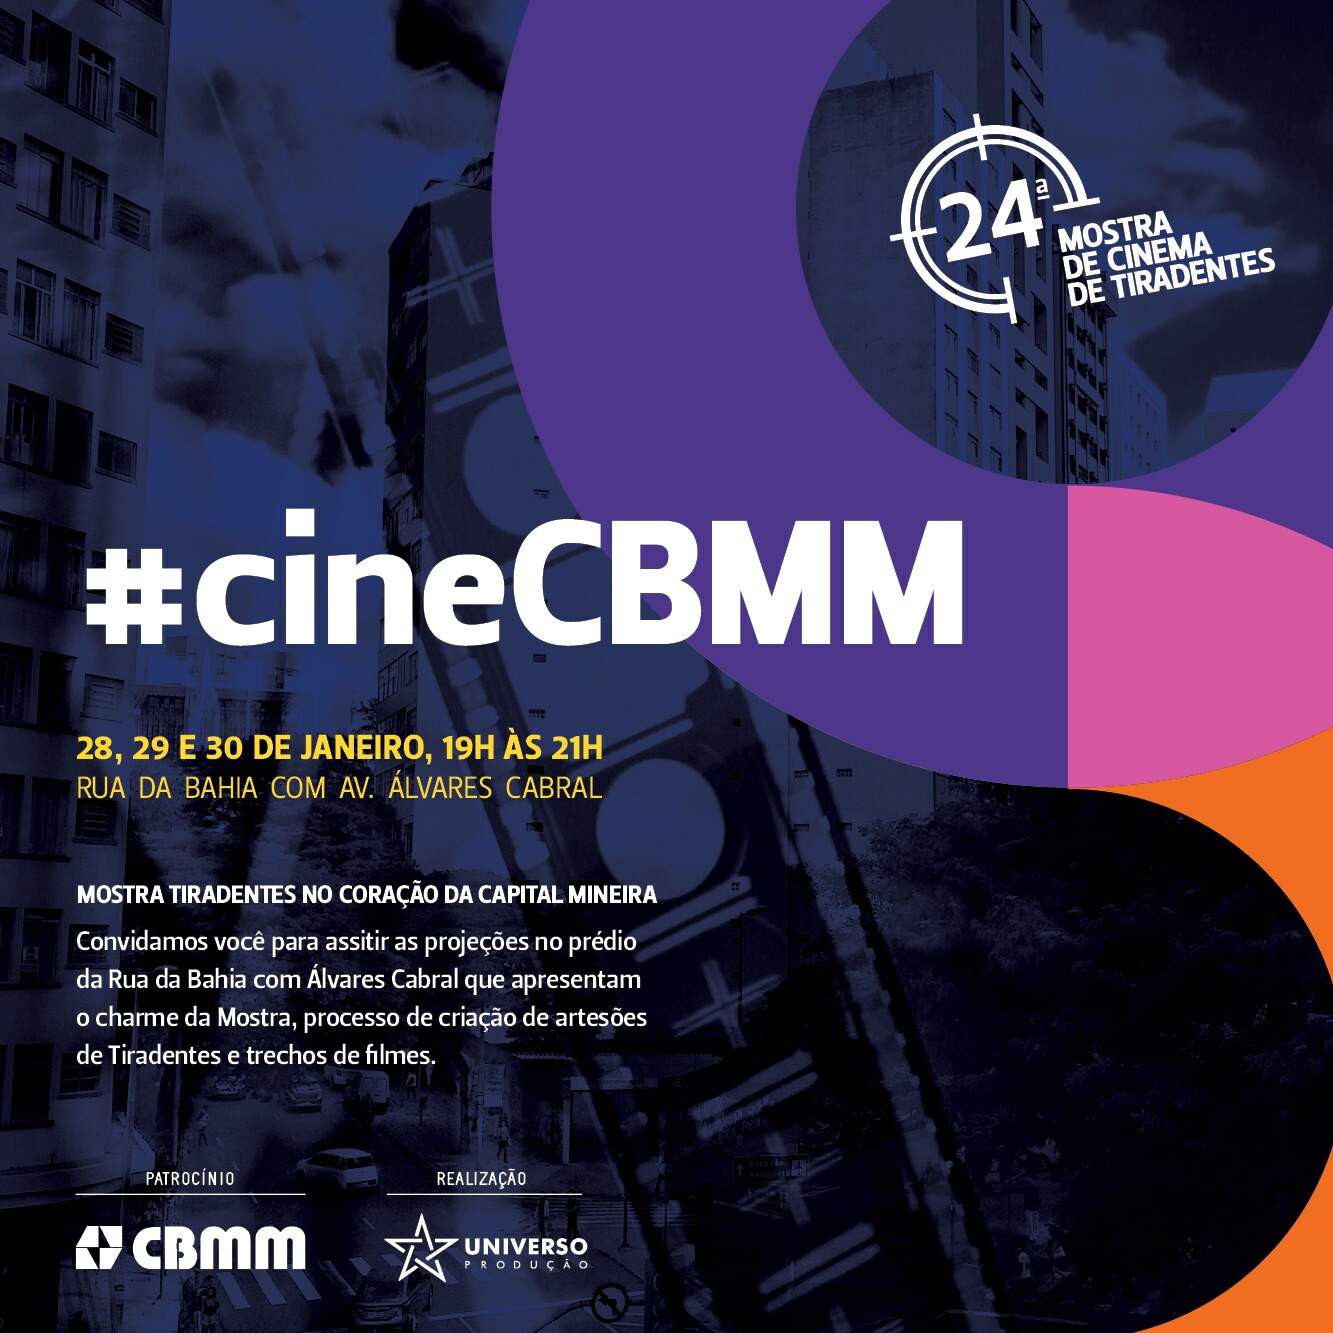 CineCBMM - Mostra Tiradentes no coração da capital mineira